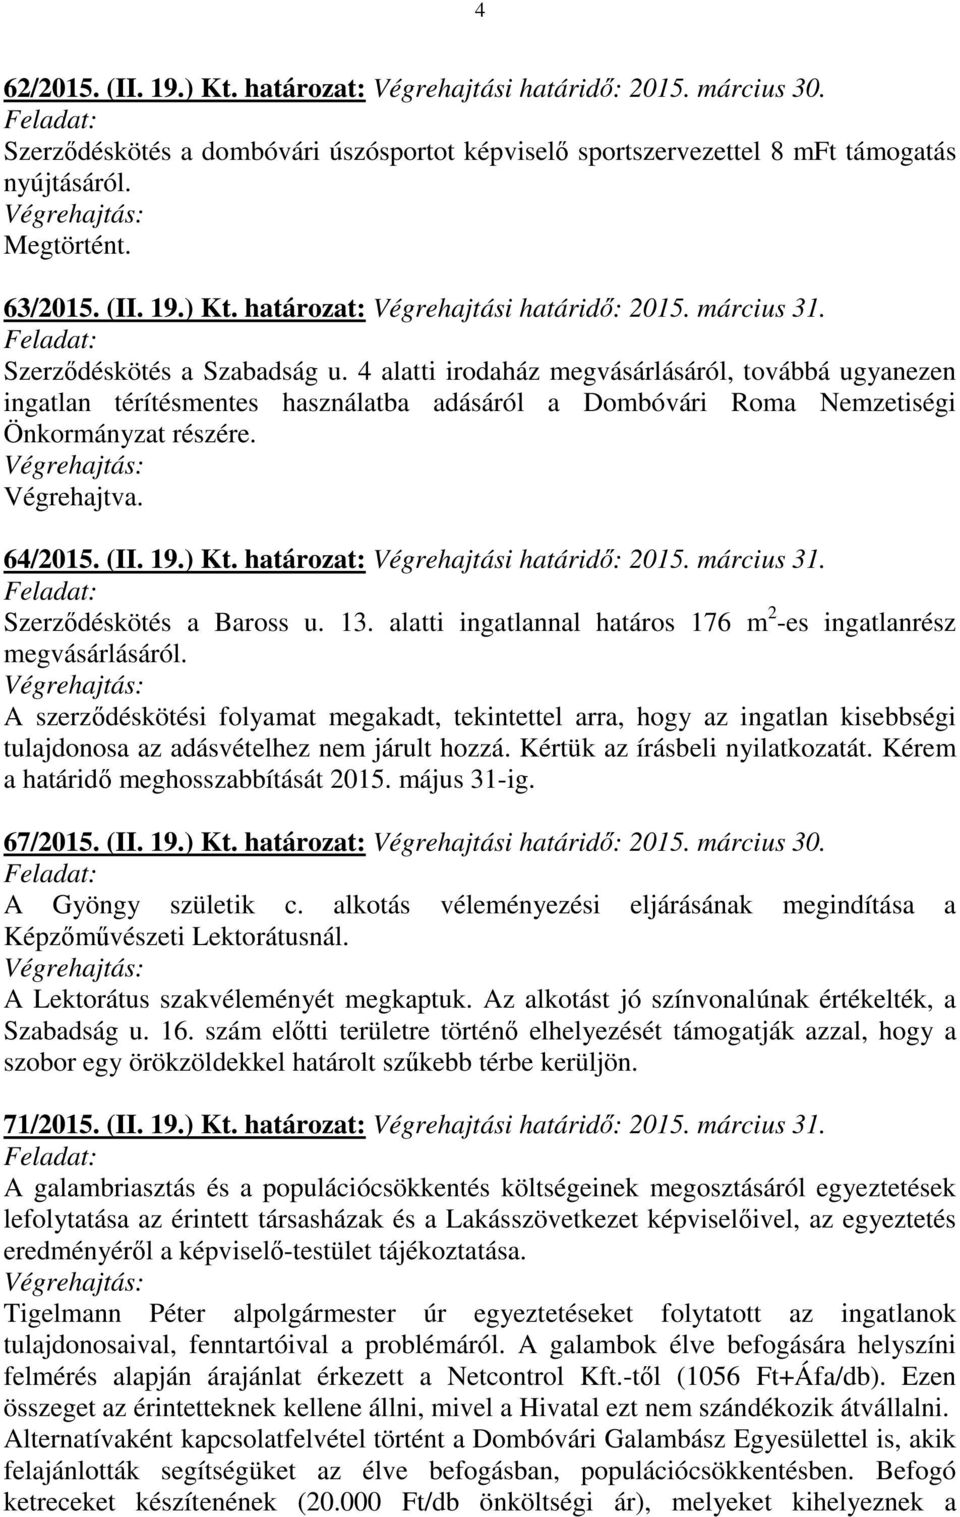 (II. 19.) Kt. határozat: Végrehajtási határidő: 2015. március 31. Szerződéskötés a Baross u. 13. alatti ingatlannal határos 176 m 2 -es ingatlanrész megvásárlásáról.